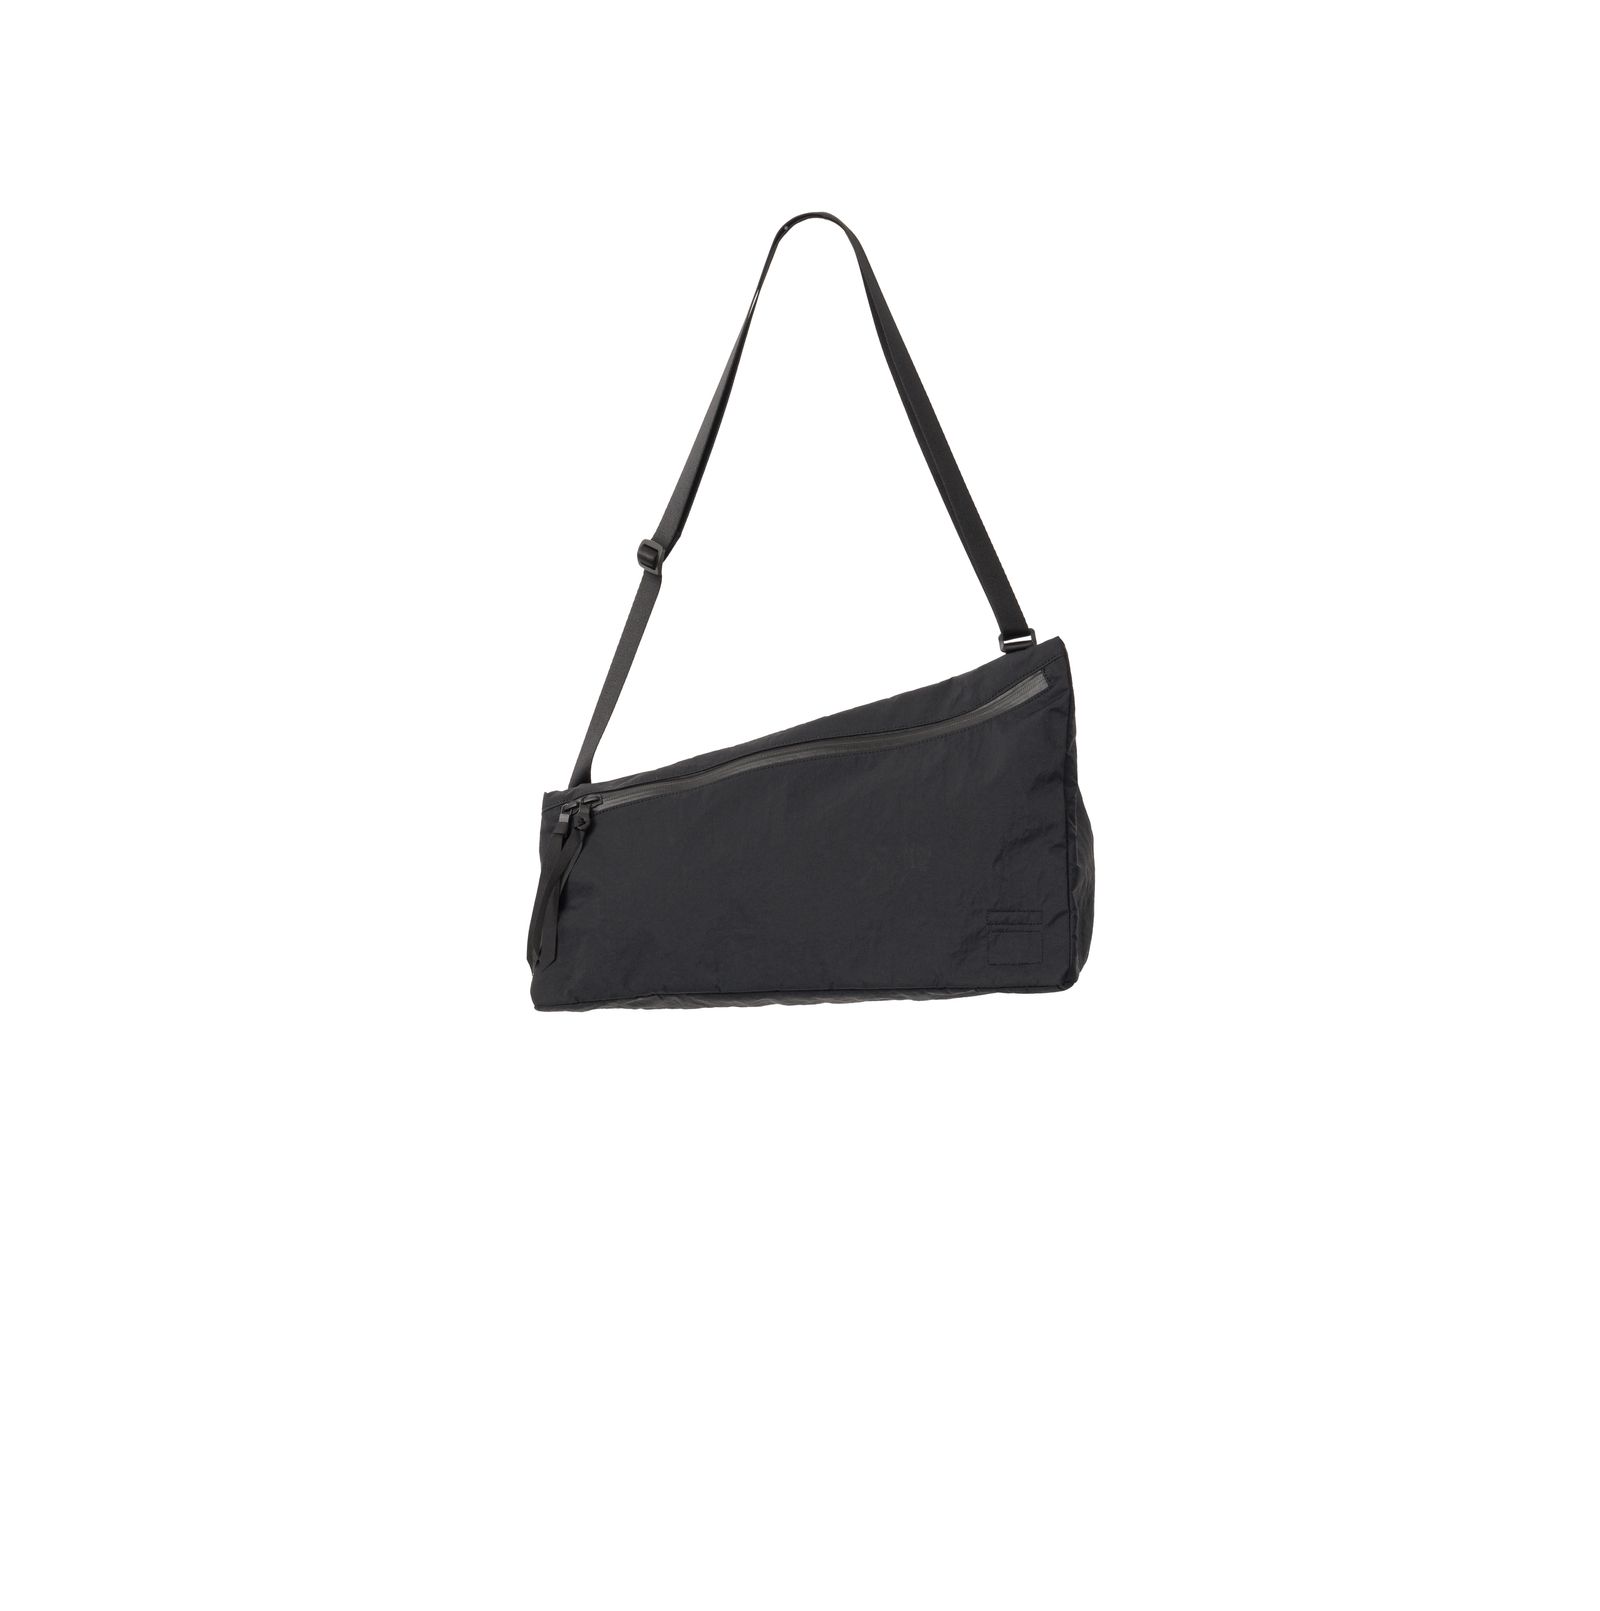 Blankof for GP Shoulder Bag ”TRIANGLE” - バッグ